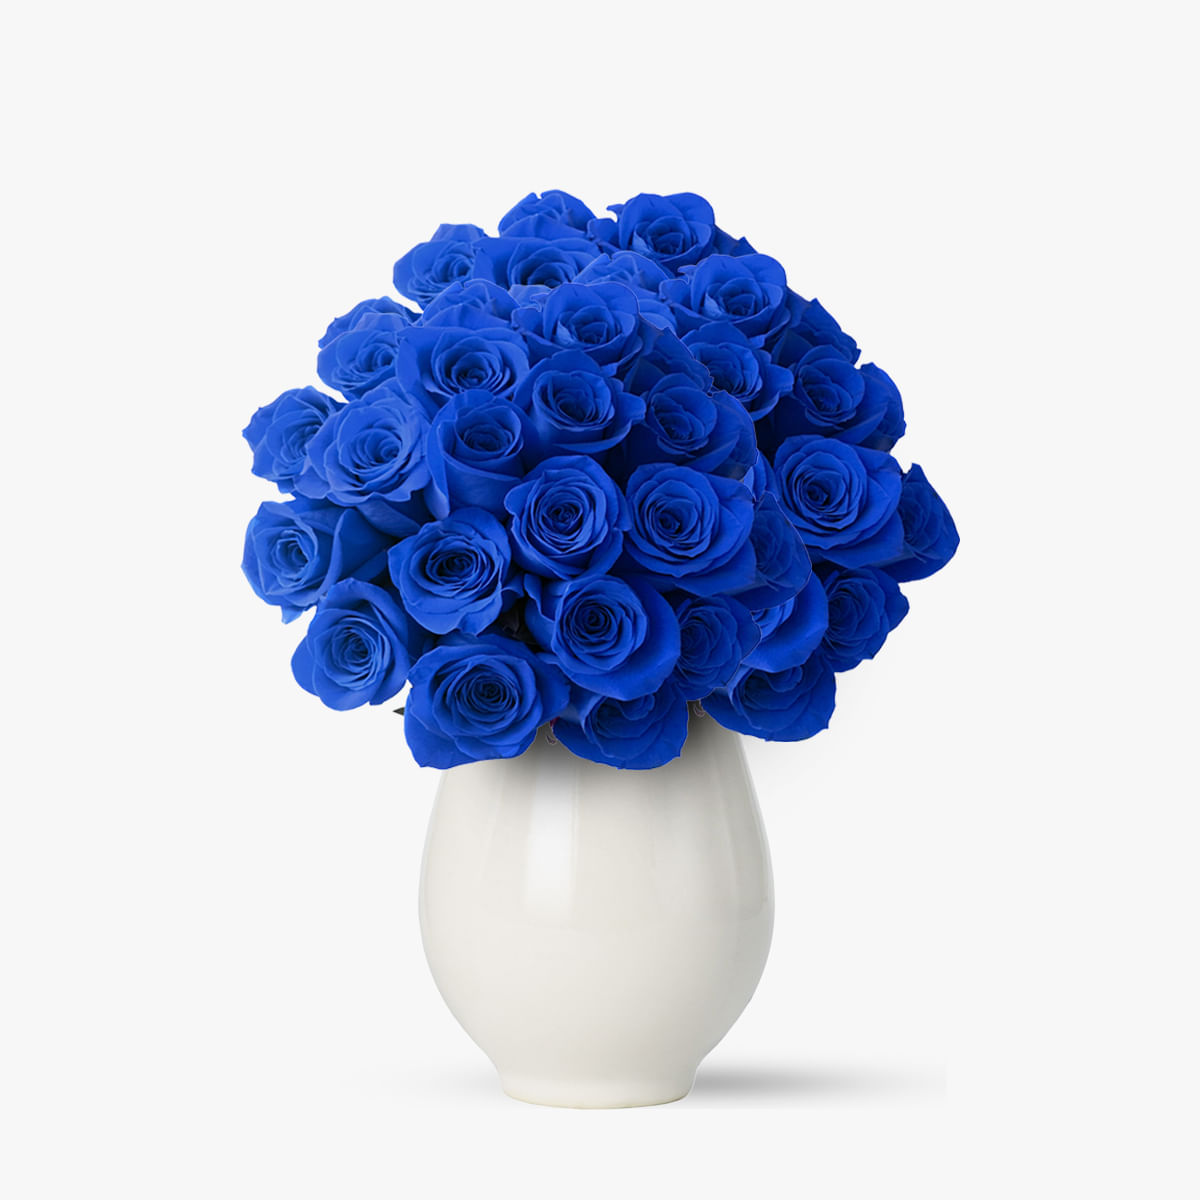 Buchet de 55 trandafiri albastri elegant si cu stil